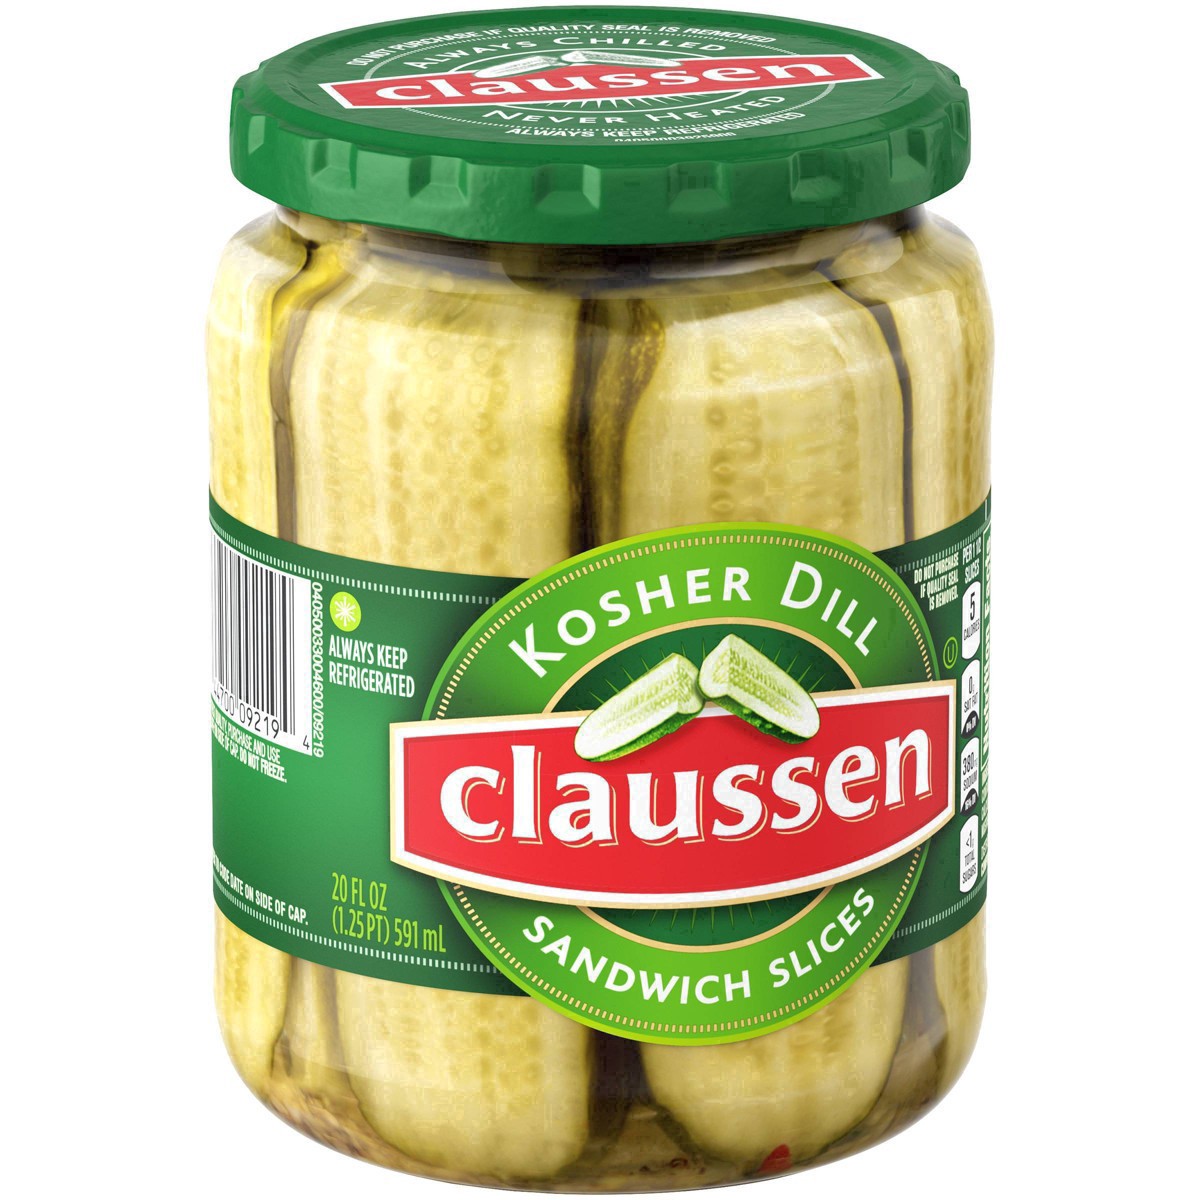 slide 122 of 144, Claussen Kosher Dill Pickle Sandwich Slices, 20 fl. oz. Jar, 20 fl oz